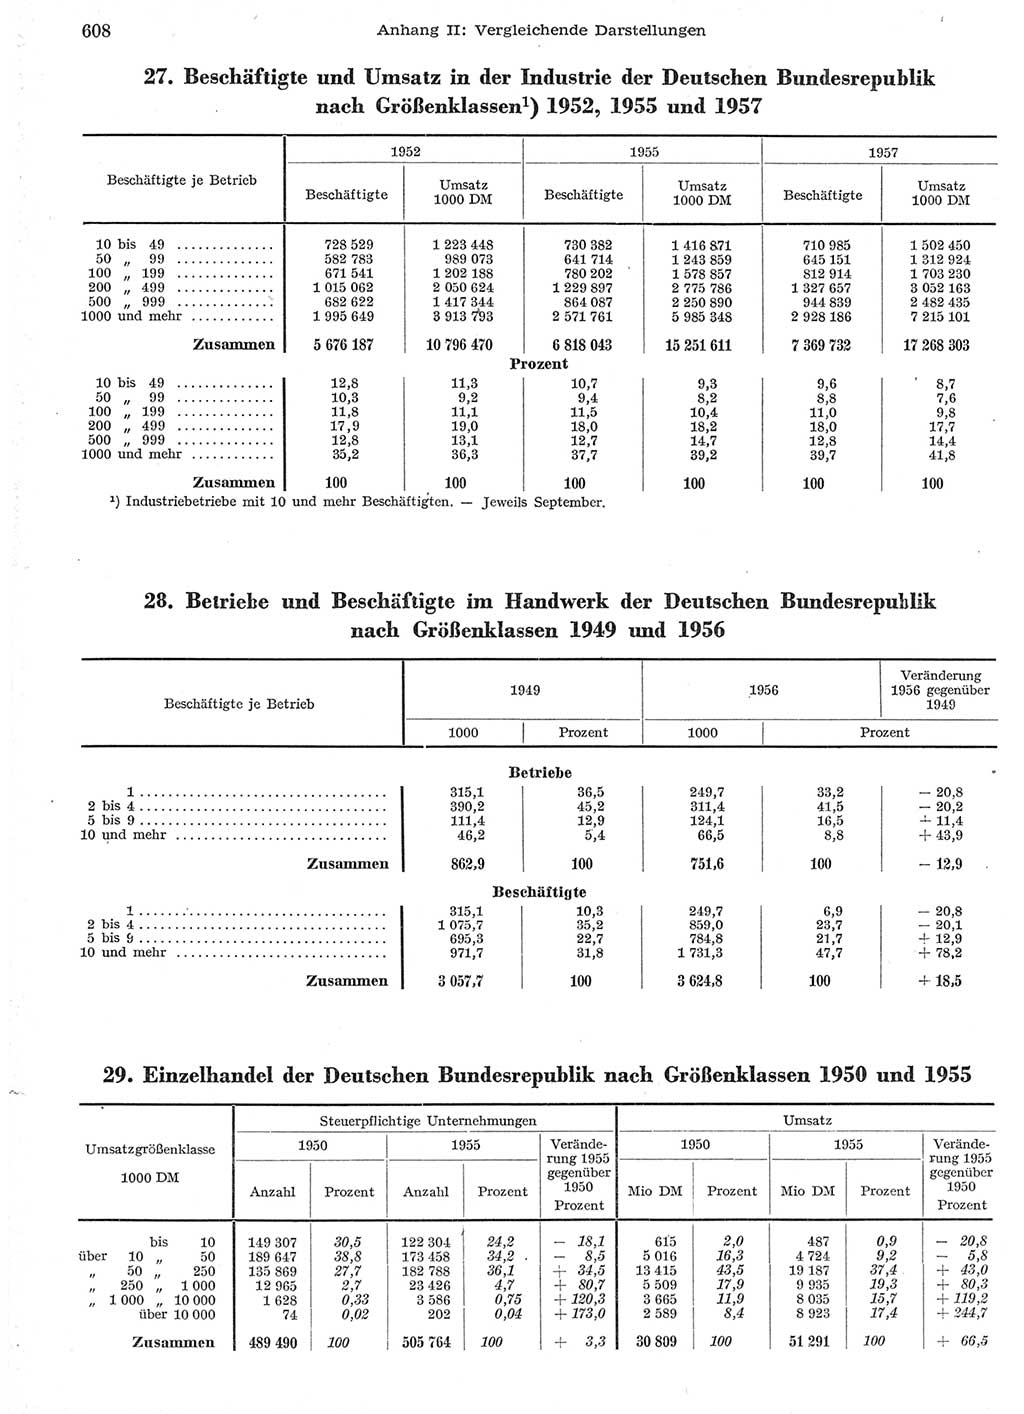 Statistisches Jahrbuch der Deutschen Demokratischen Republik (DDR) 1958, Seite 608 (Stat. Jb. DDR 1958, S. 608)